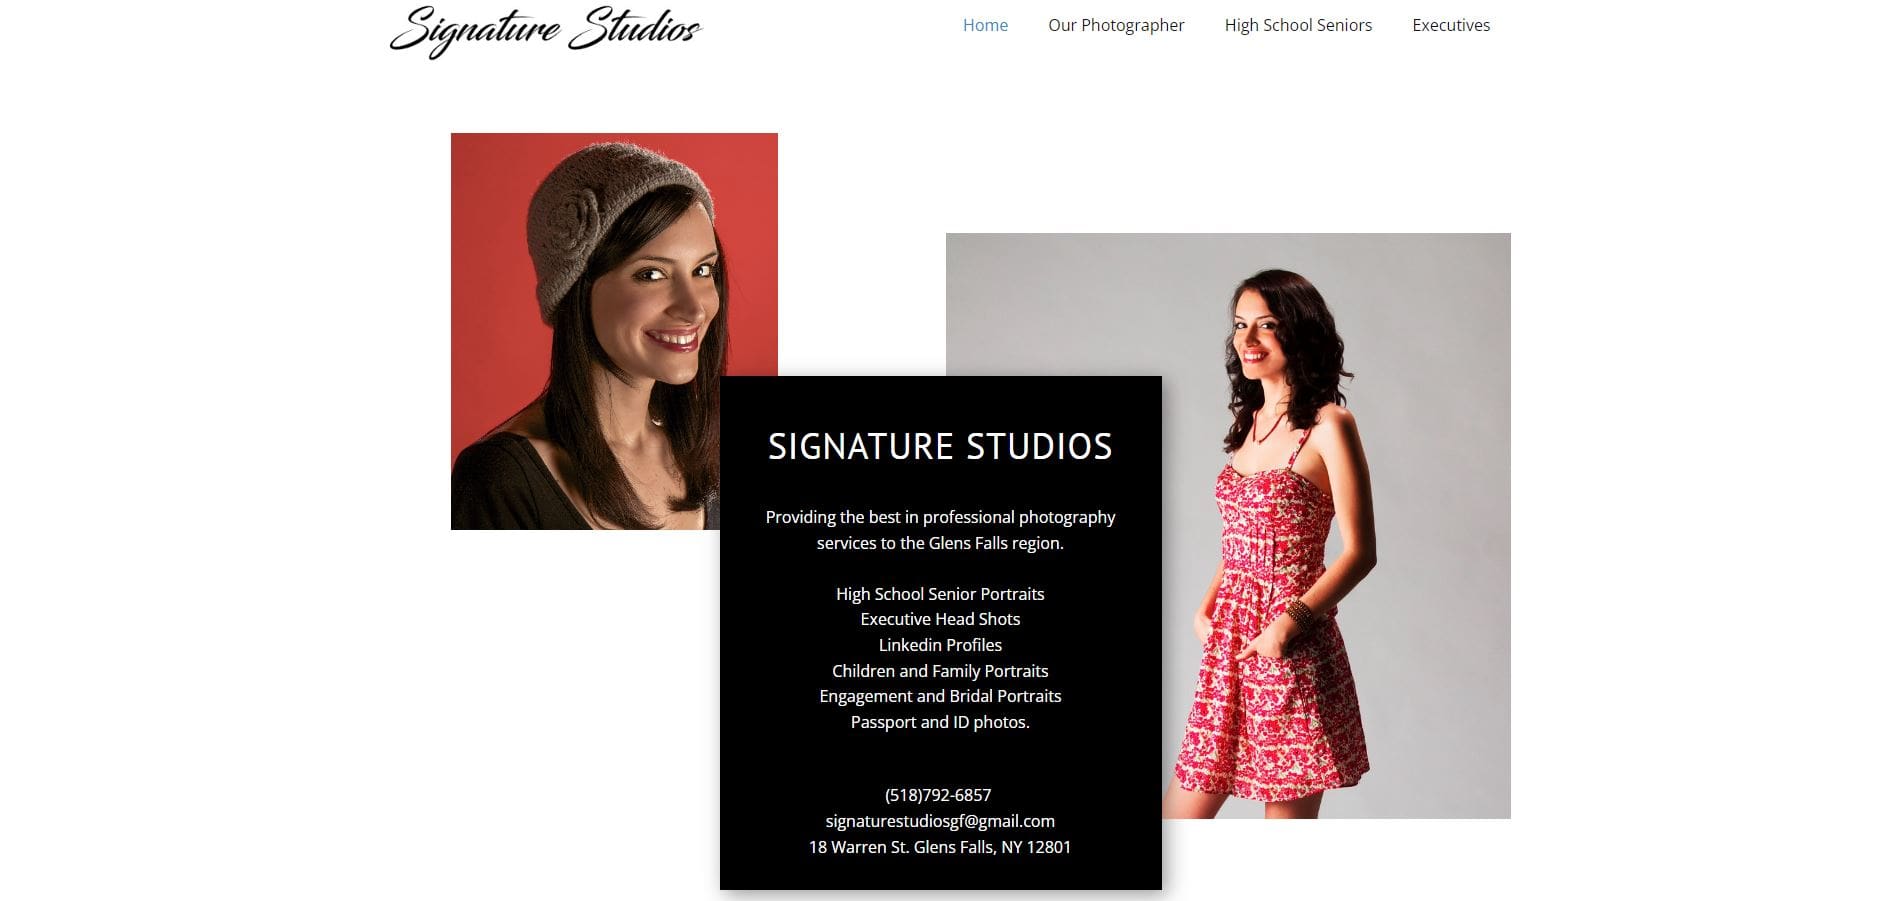 Old Signature Studios Website Design